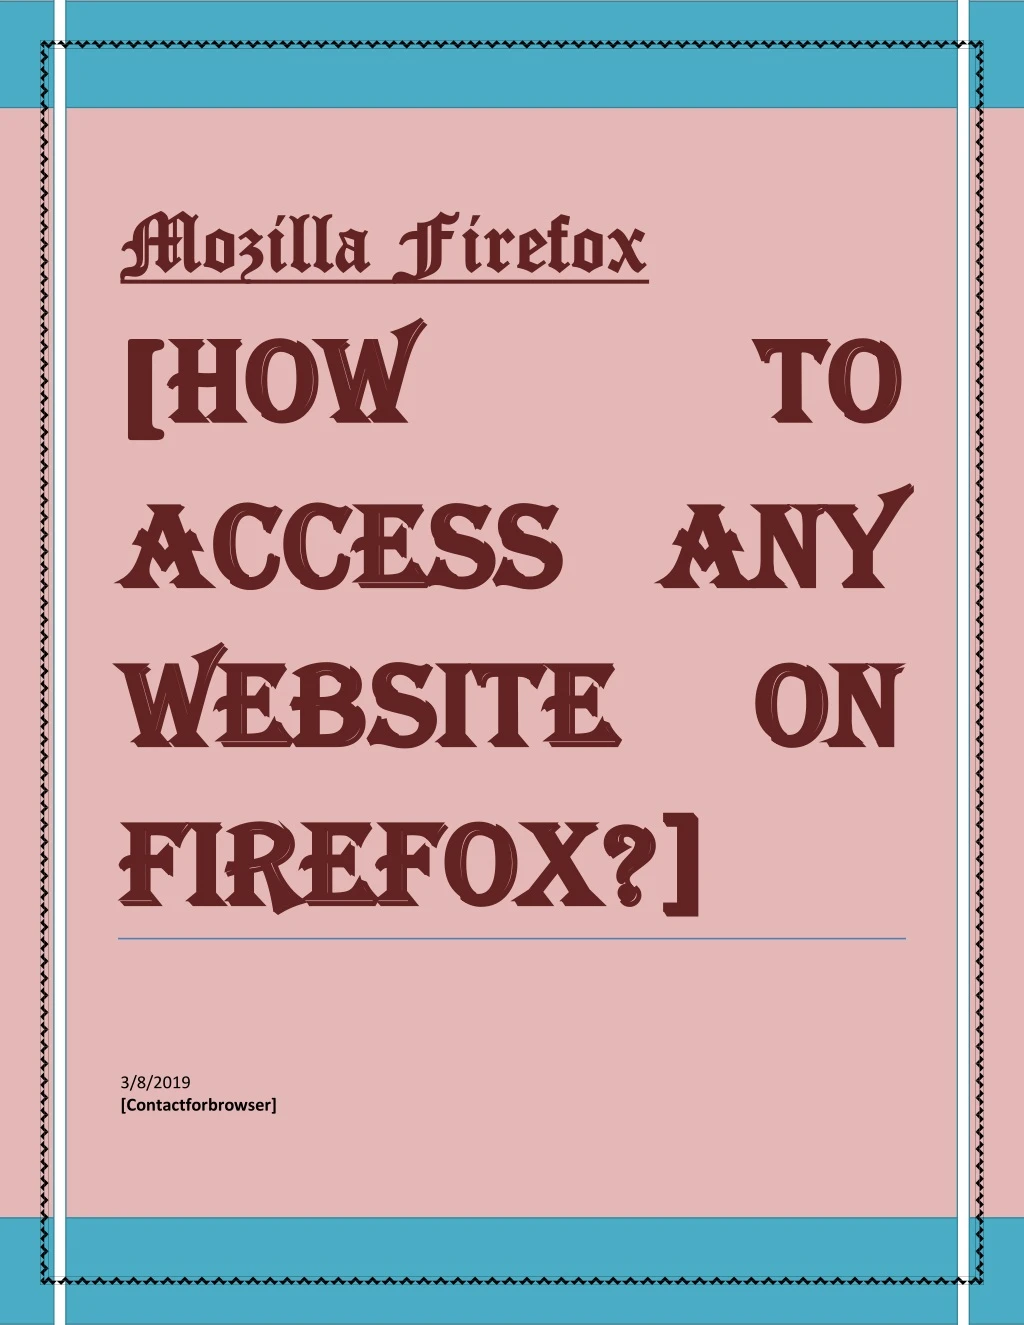 mozilla firefox mozilla firefox how how access